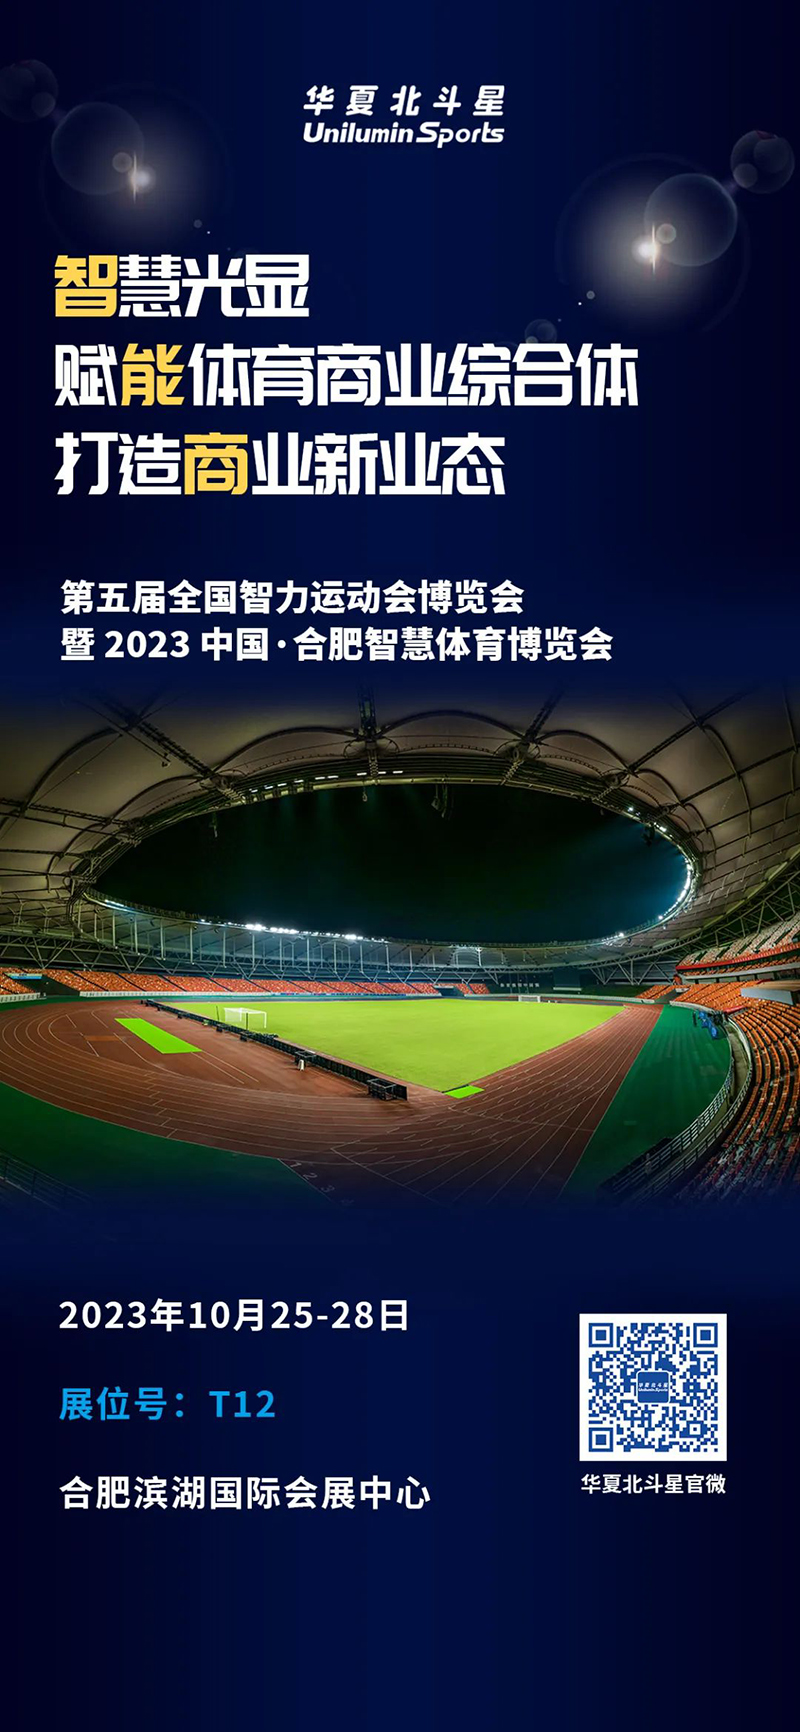 第五届全国智力运动会博览会暨 2023 中国·合肥智慧体育博览会